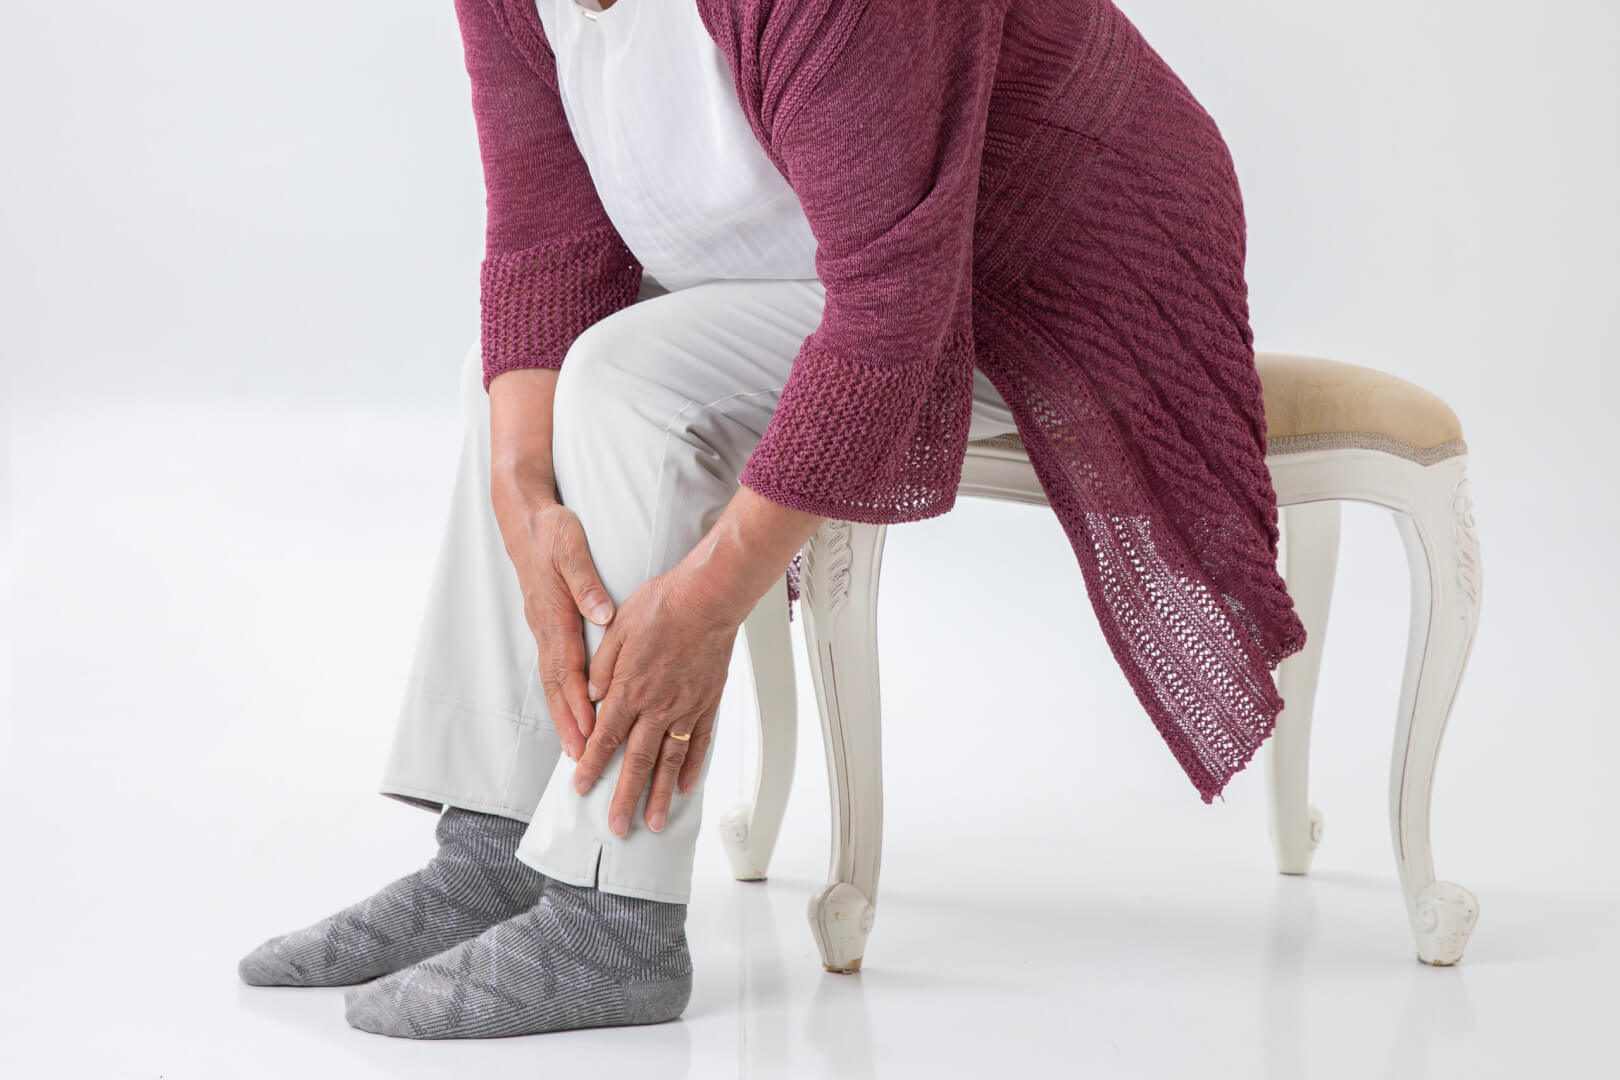 Un plano tres cuartos de una mujer mayor sentada se toca la parte de la espinilla de la pierna en claro gesto de dolencia. 